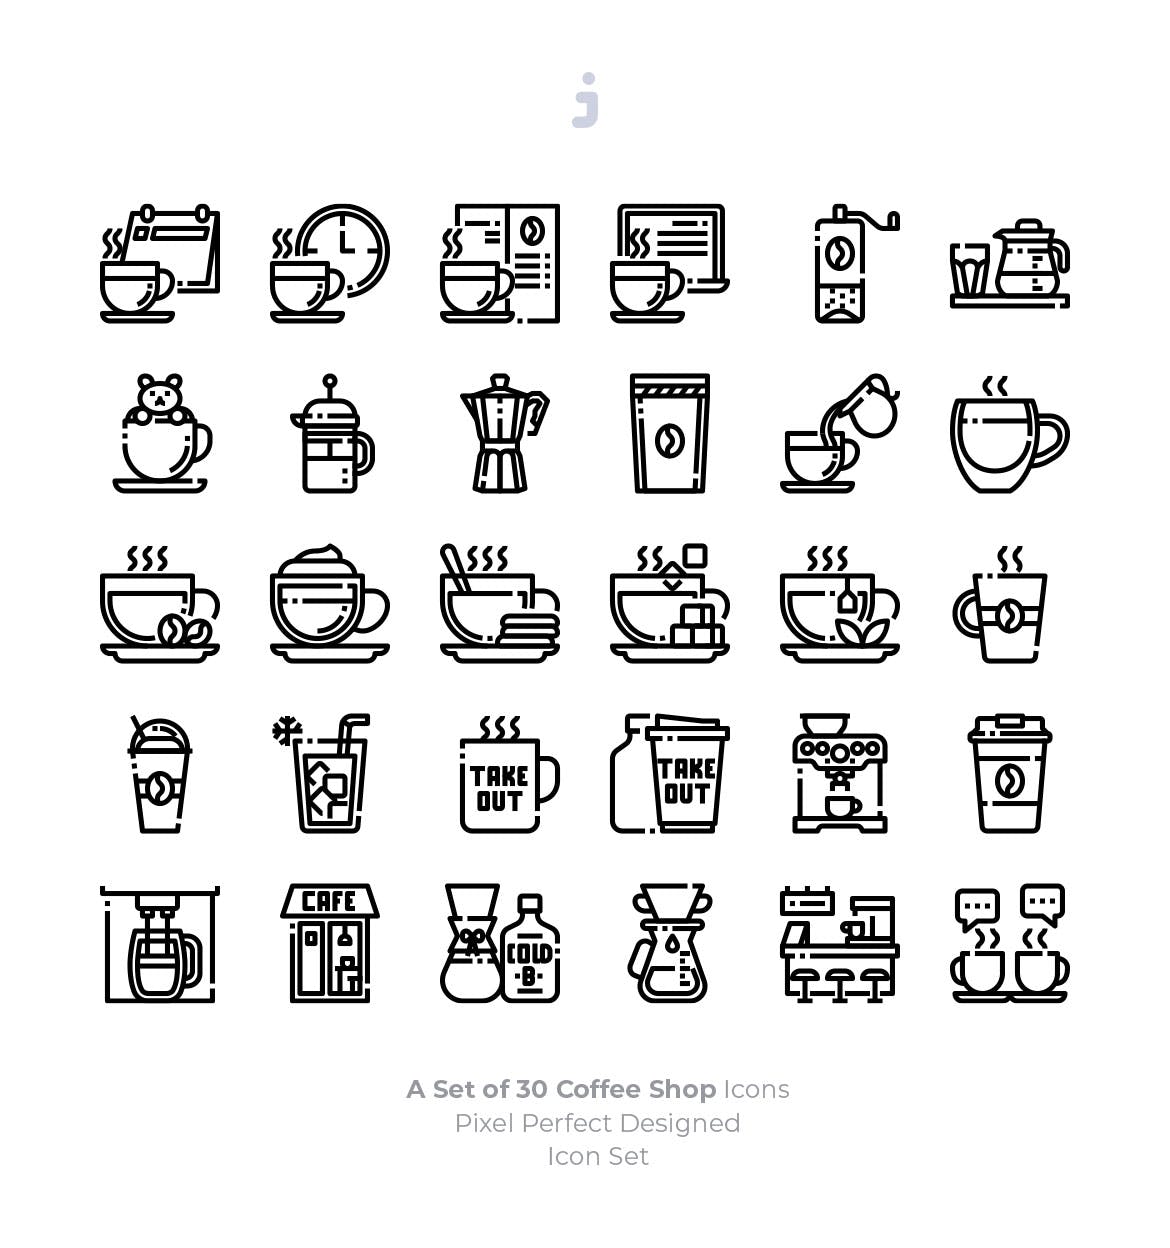 30枚咖啡/咖啡店矢量第一素材精选图标素材 30 Coffee Shop Icons插图(2)